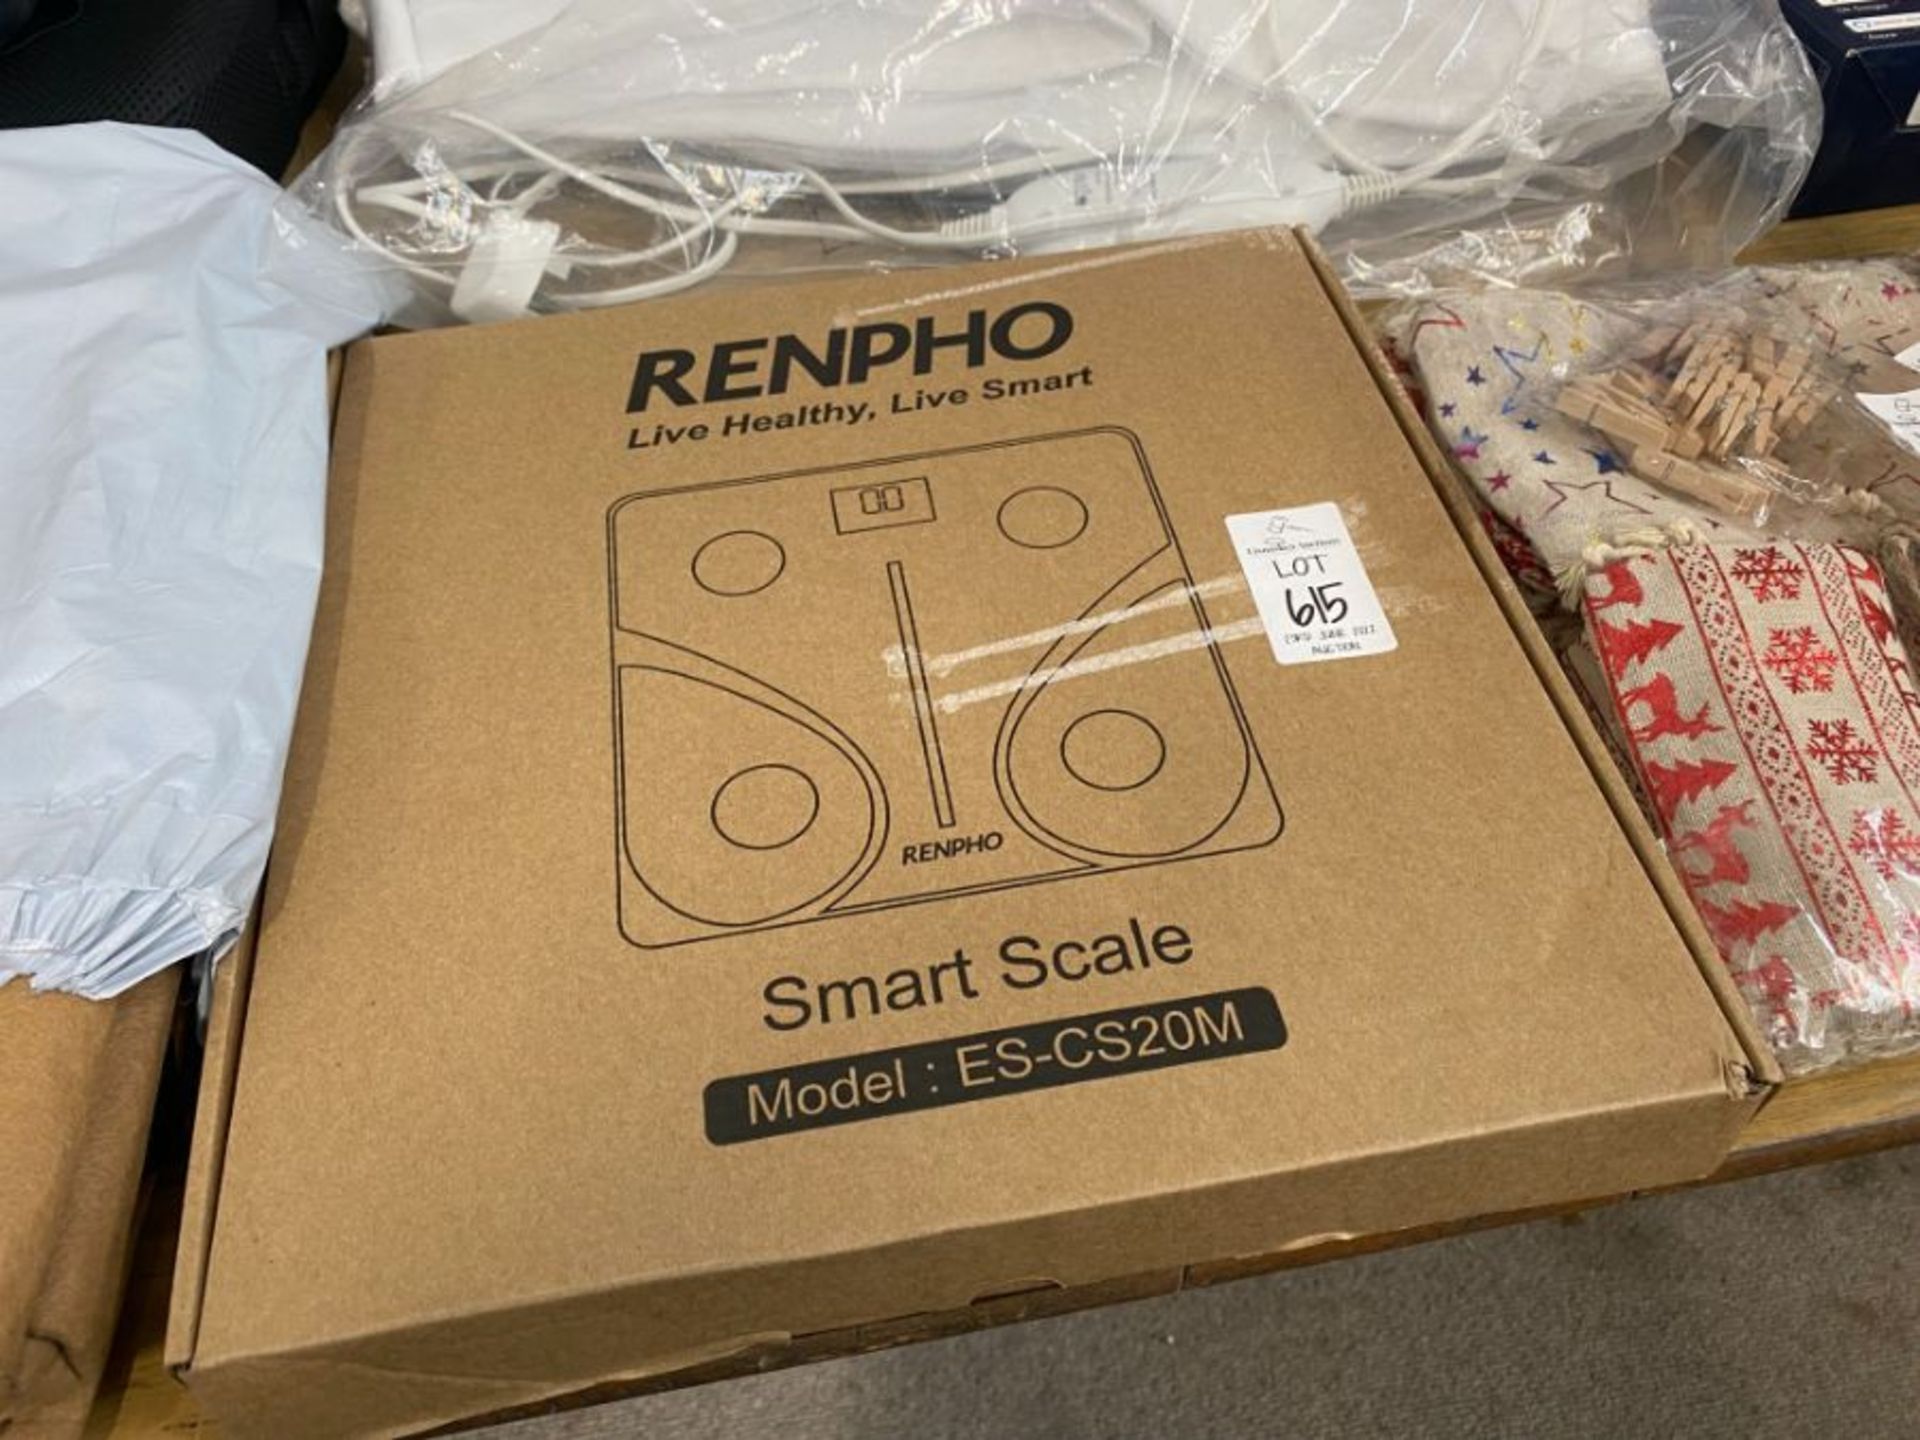 RENPHO SMART SCALE ES-CS20M